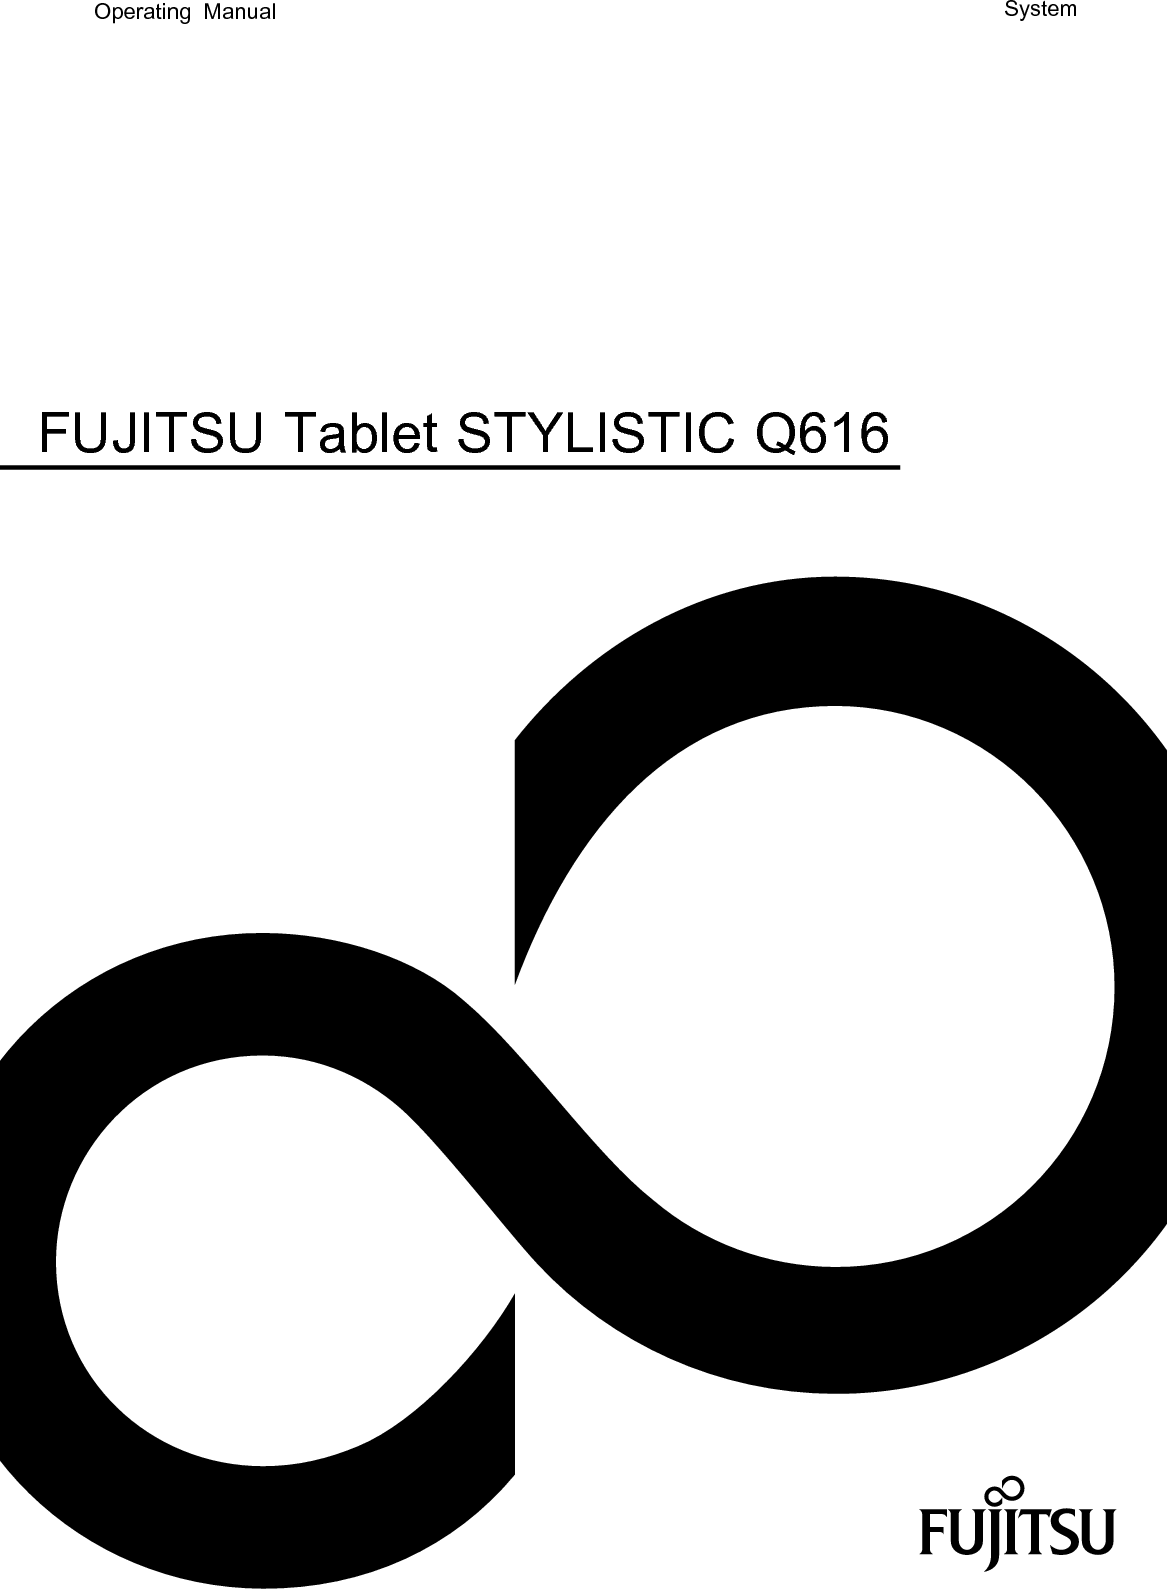 SystemOperating ManualFUJITSU Tablet STYLISTIC Q616